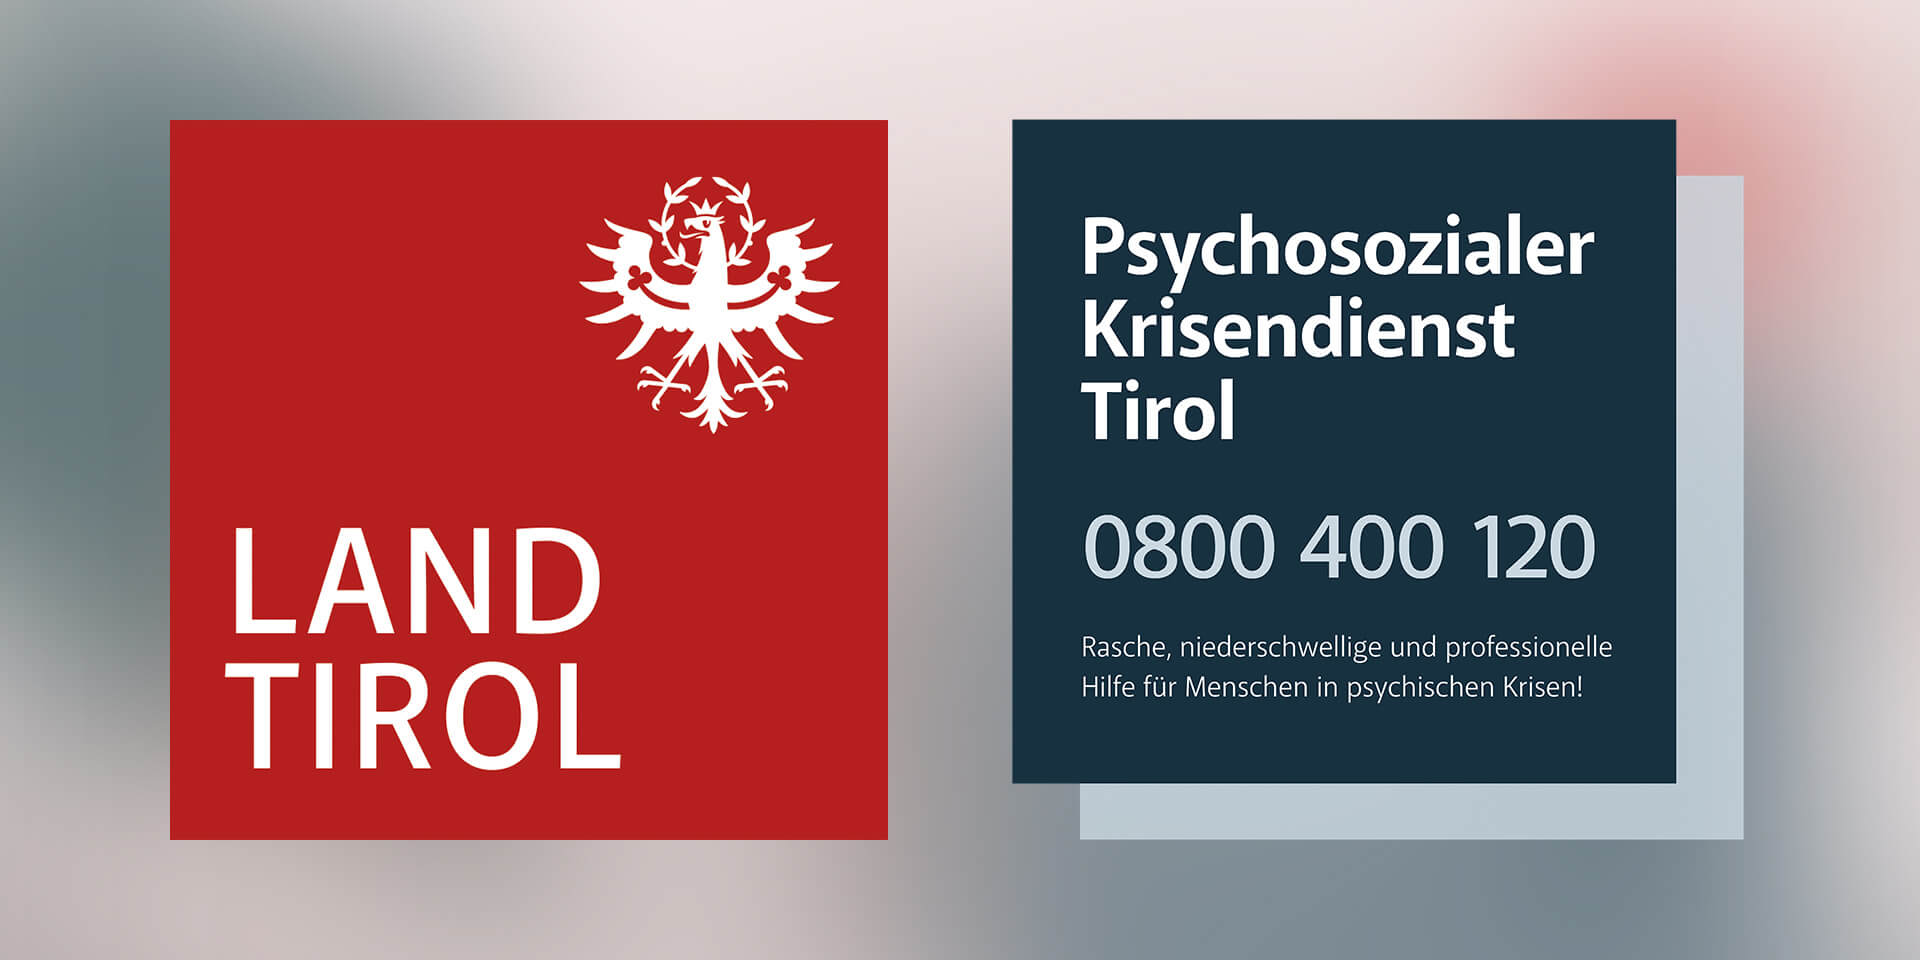 Hinweis: Psychosozialer Krisendienst Tirol